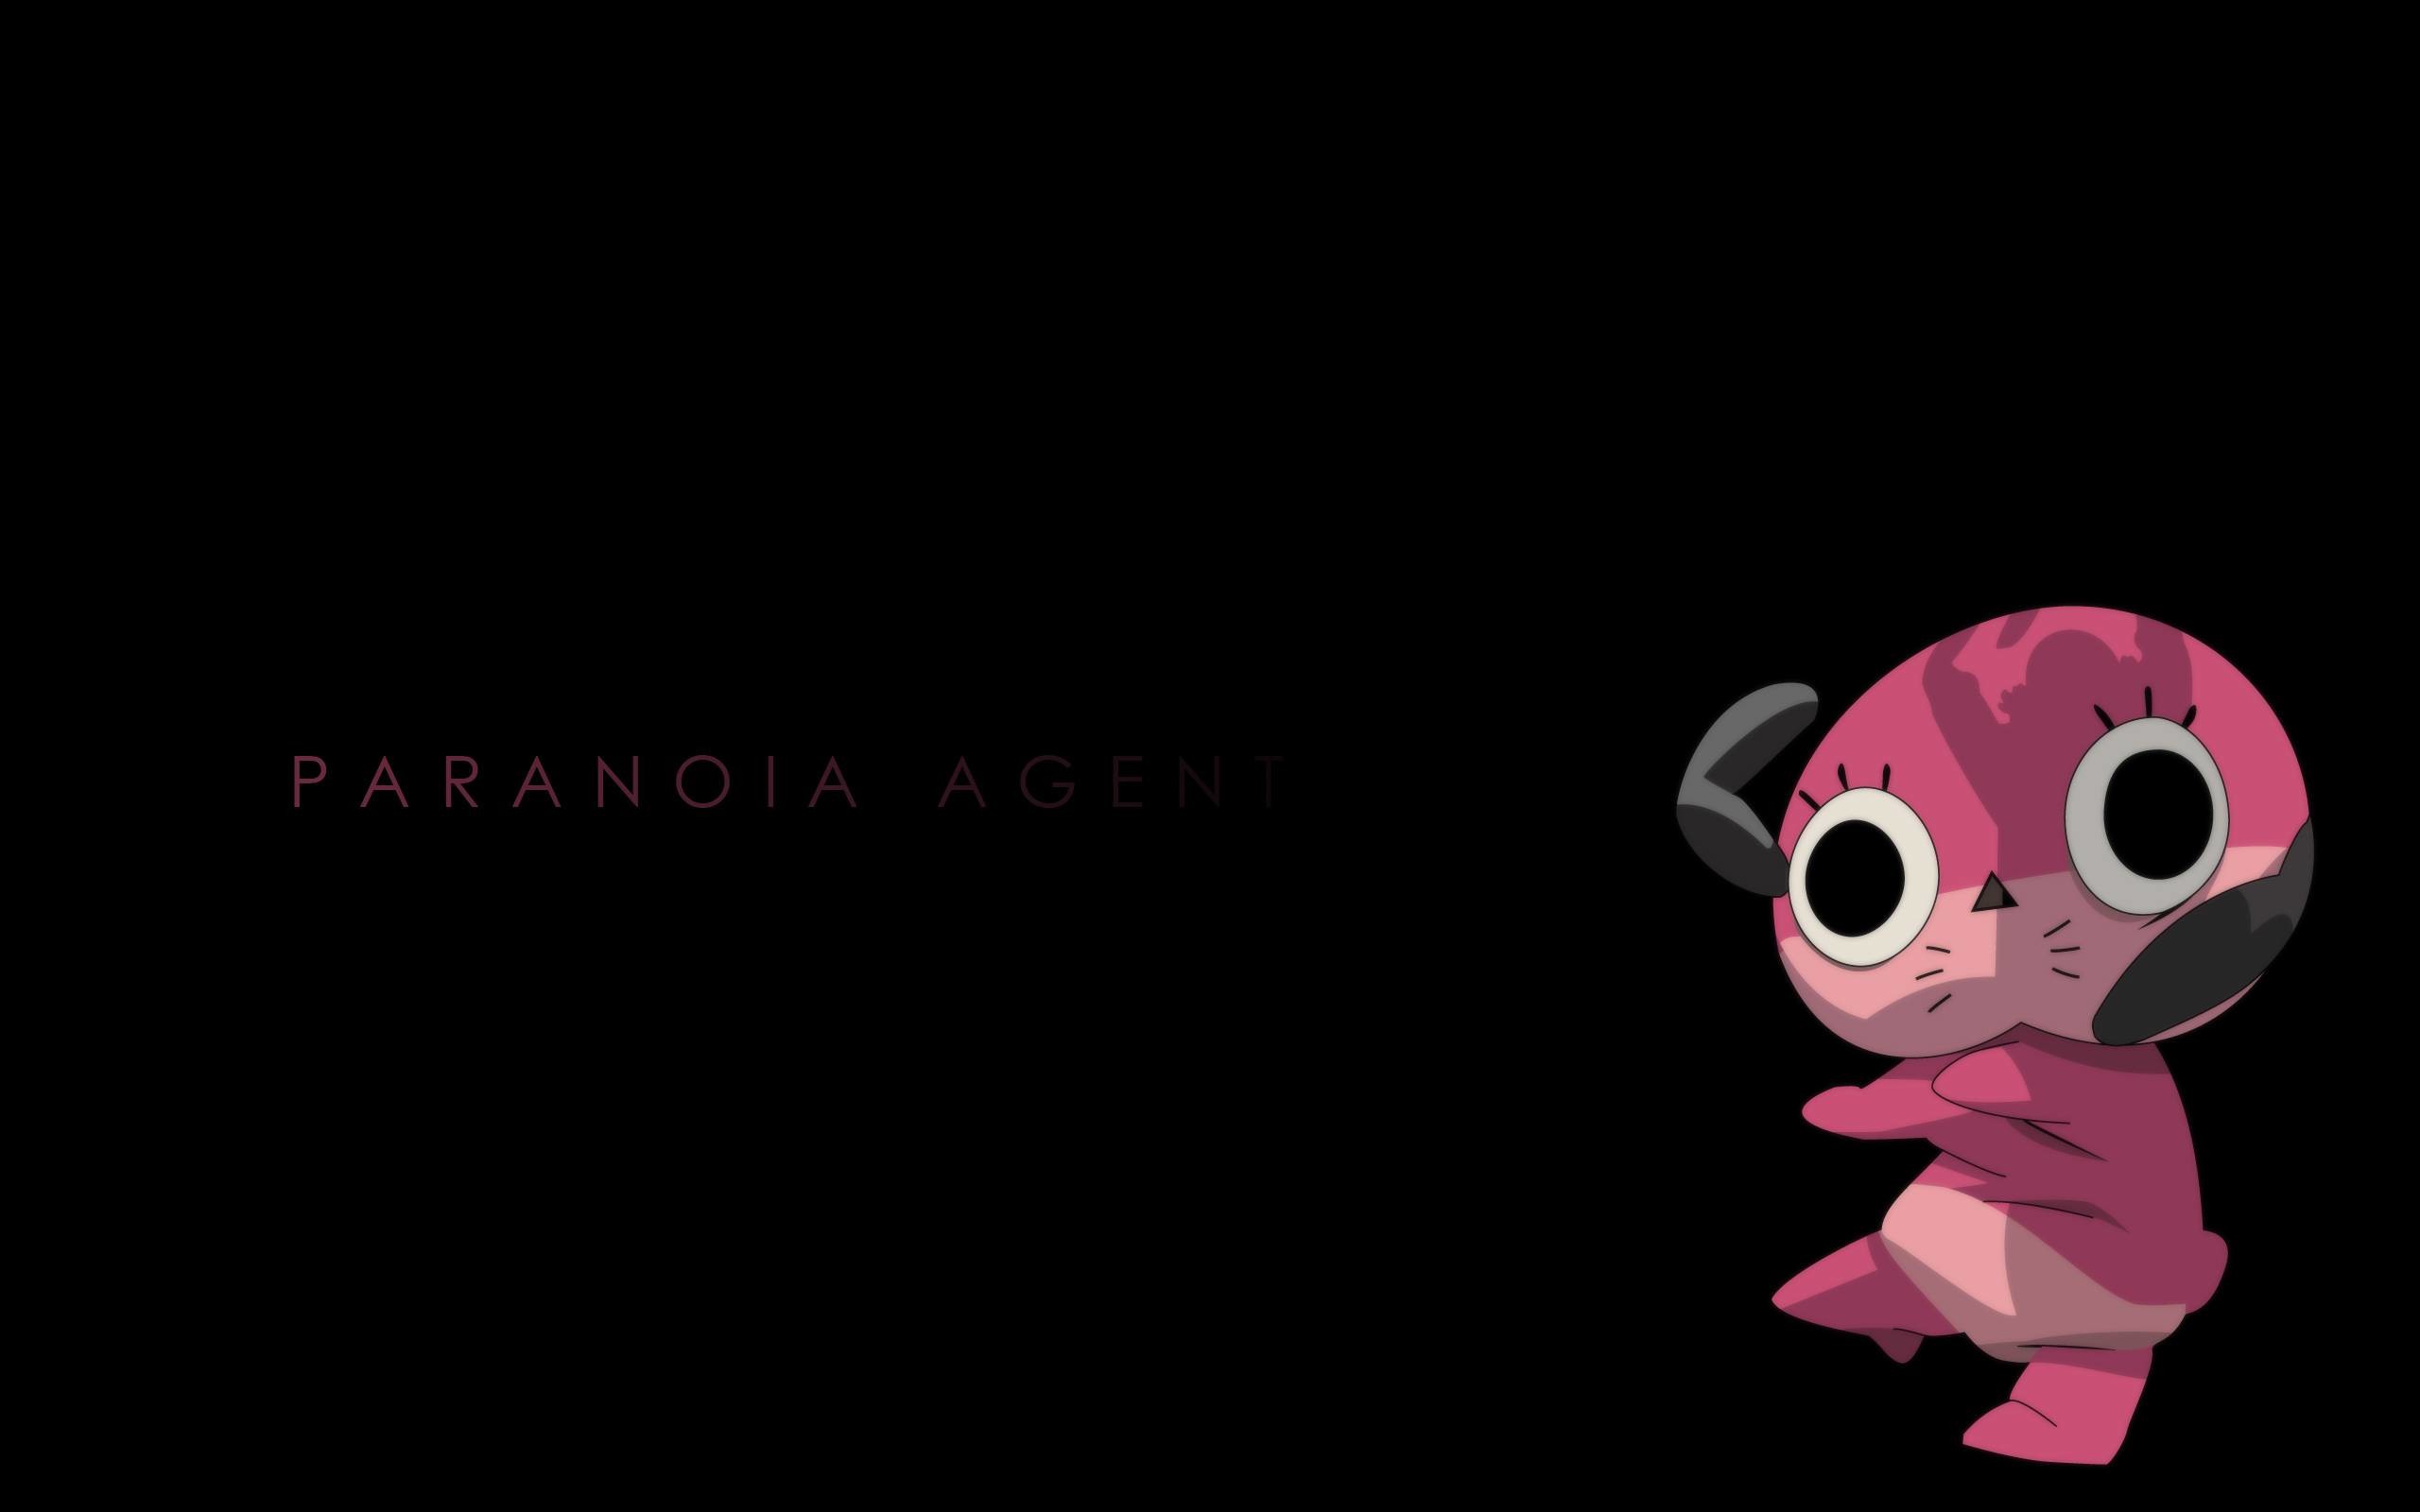 2560x1600 Paranoia agent wallpaper HQ WALLPAPER - (#16992)